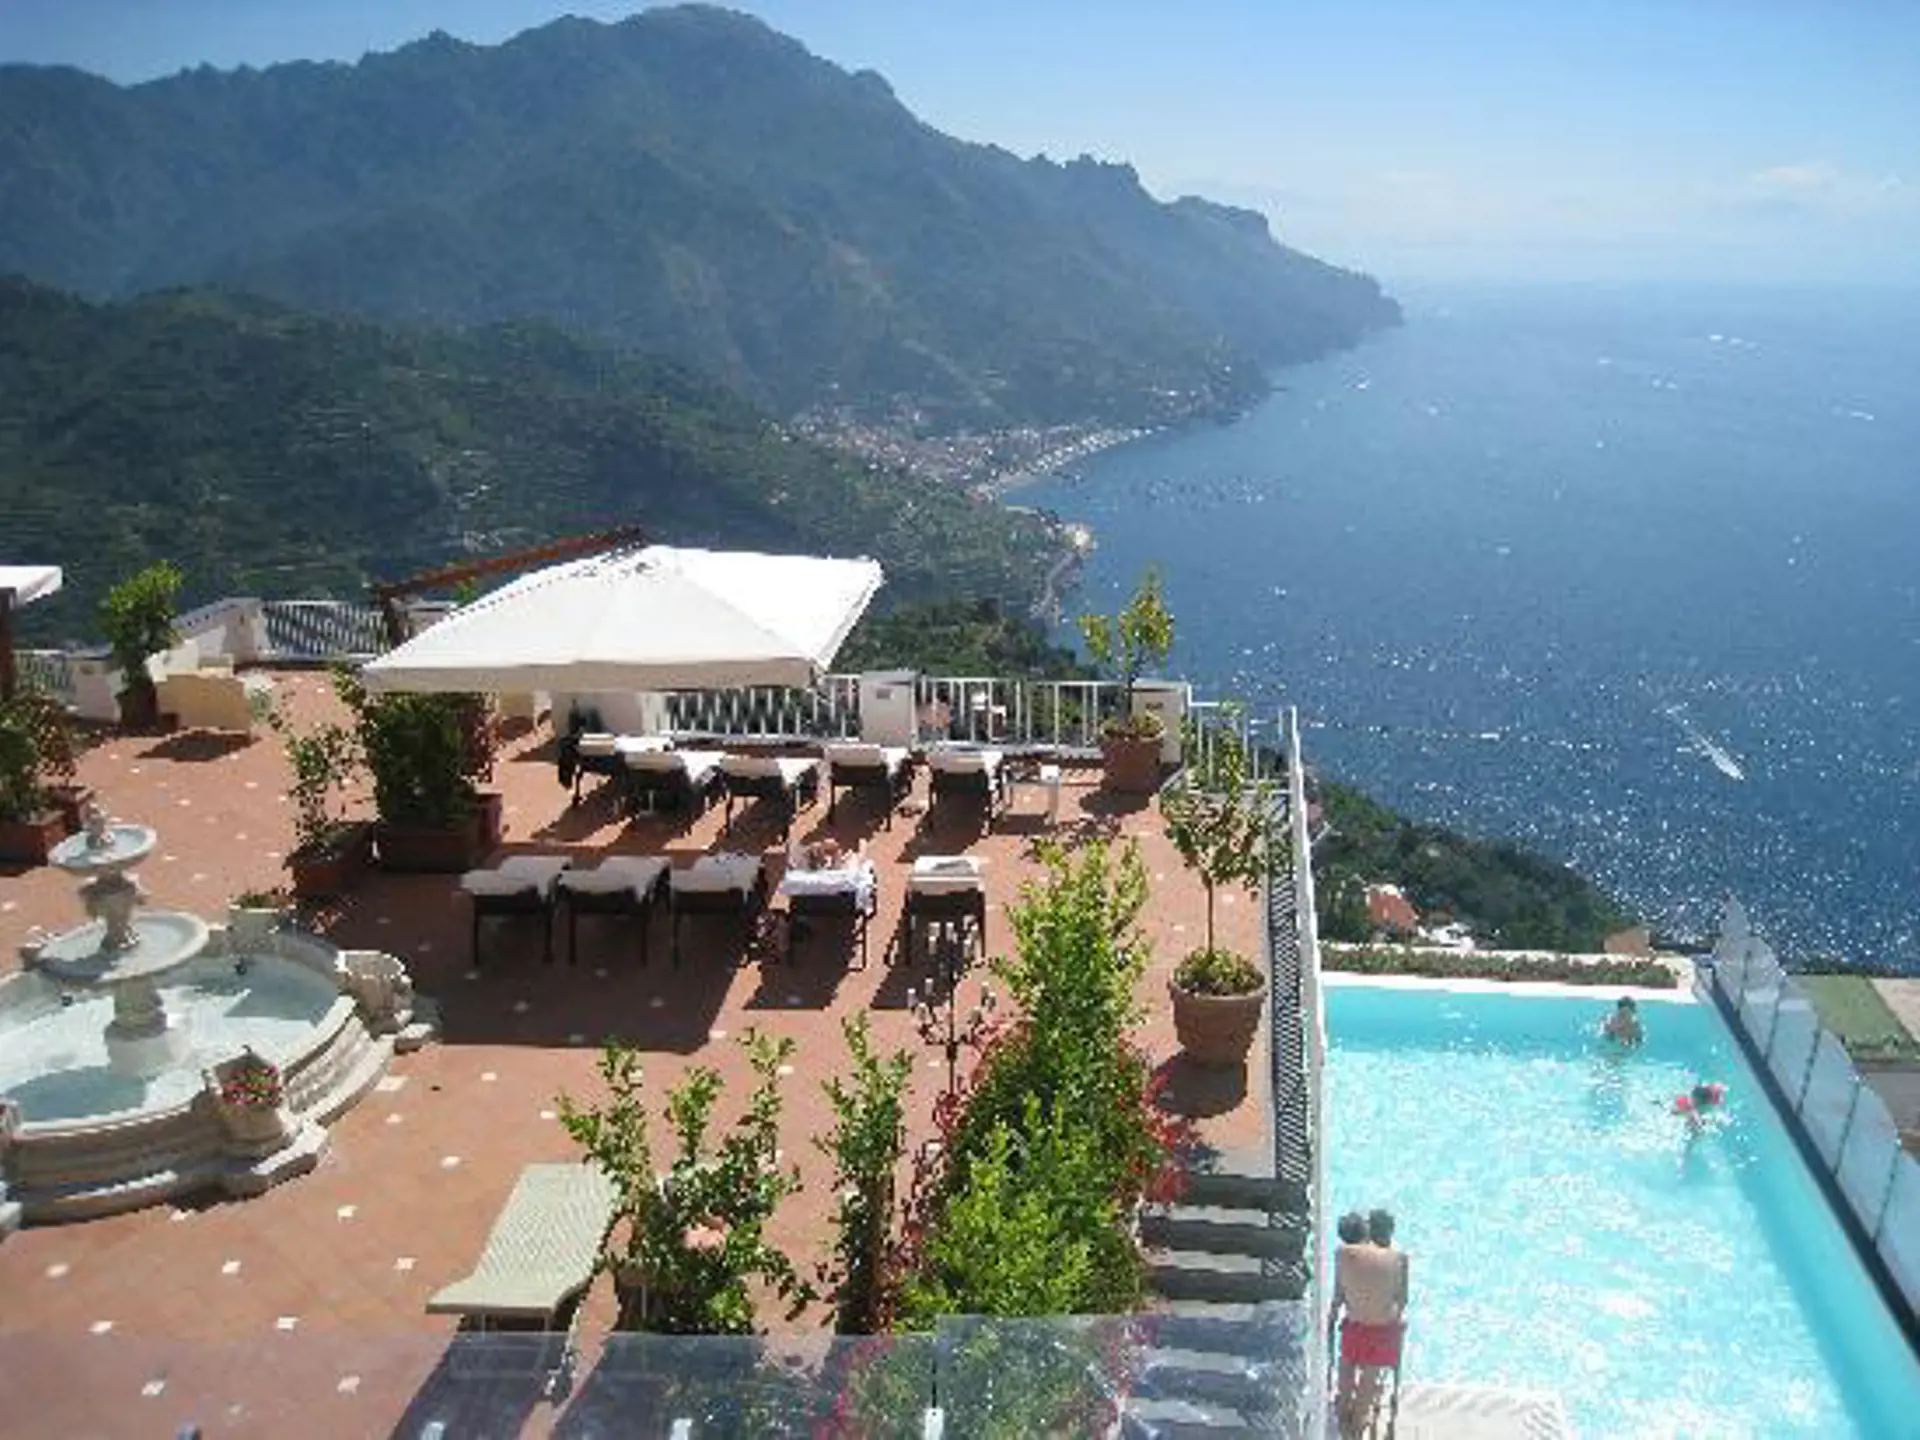 Hotel Villa Fraulo har terrasse og pool med en fantastisk udsigt